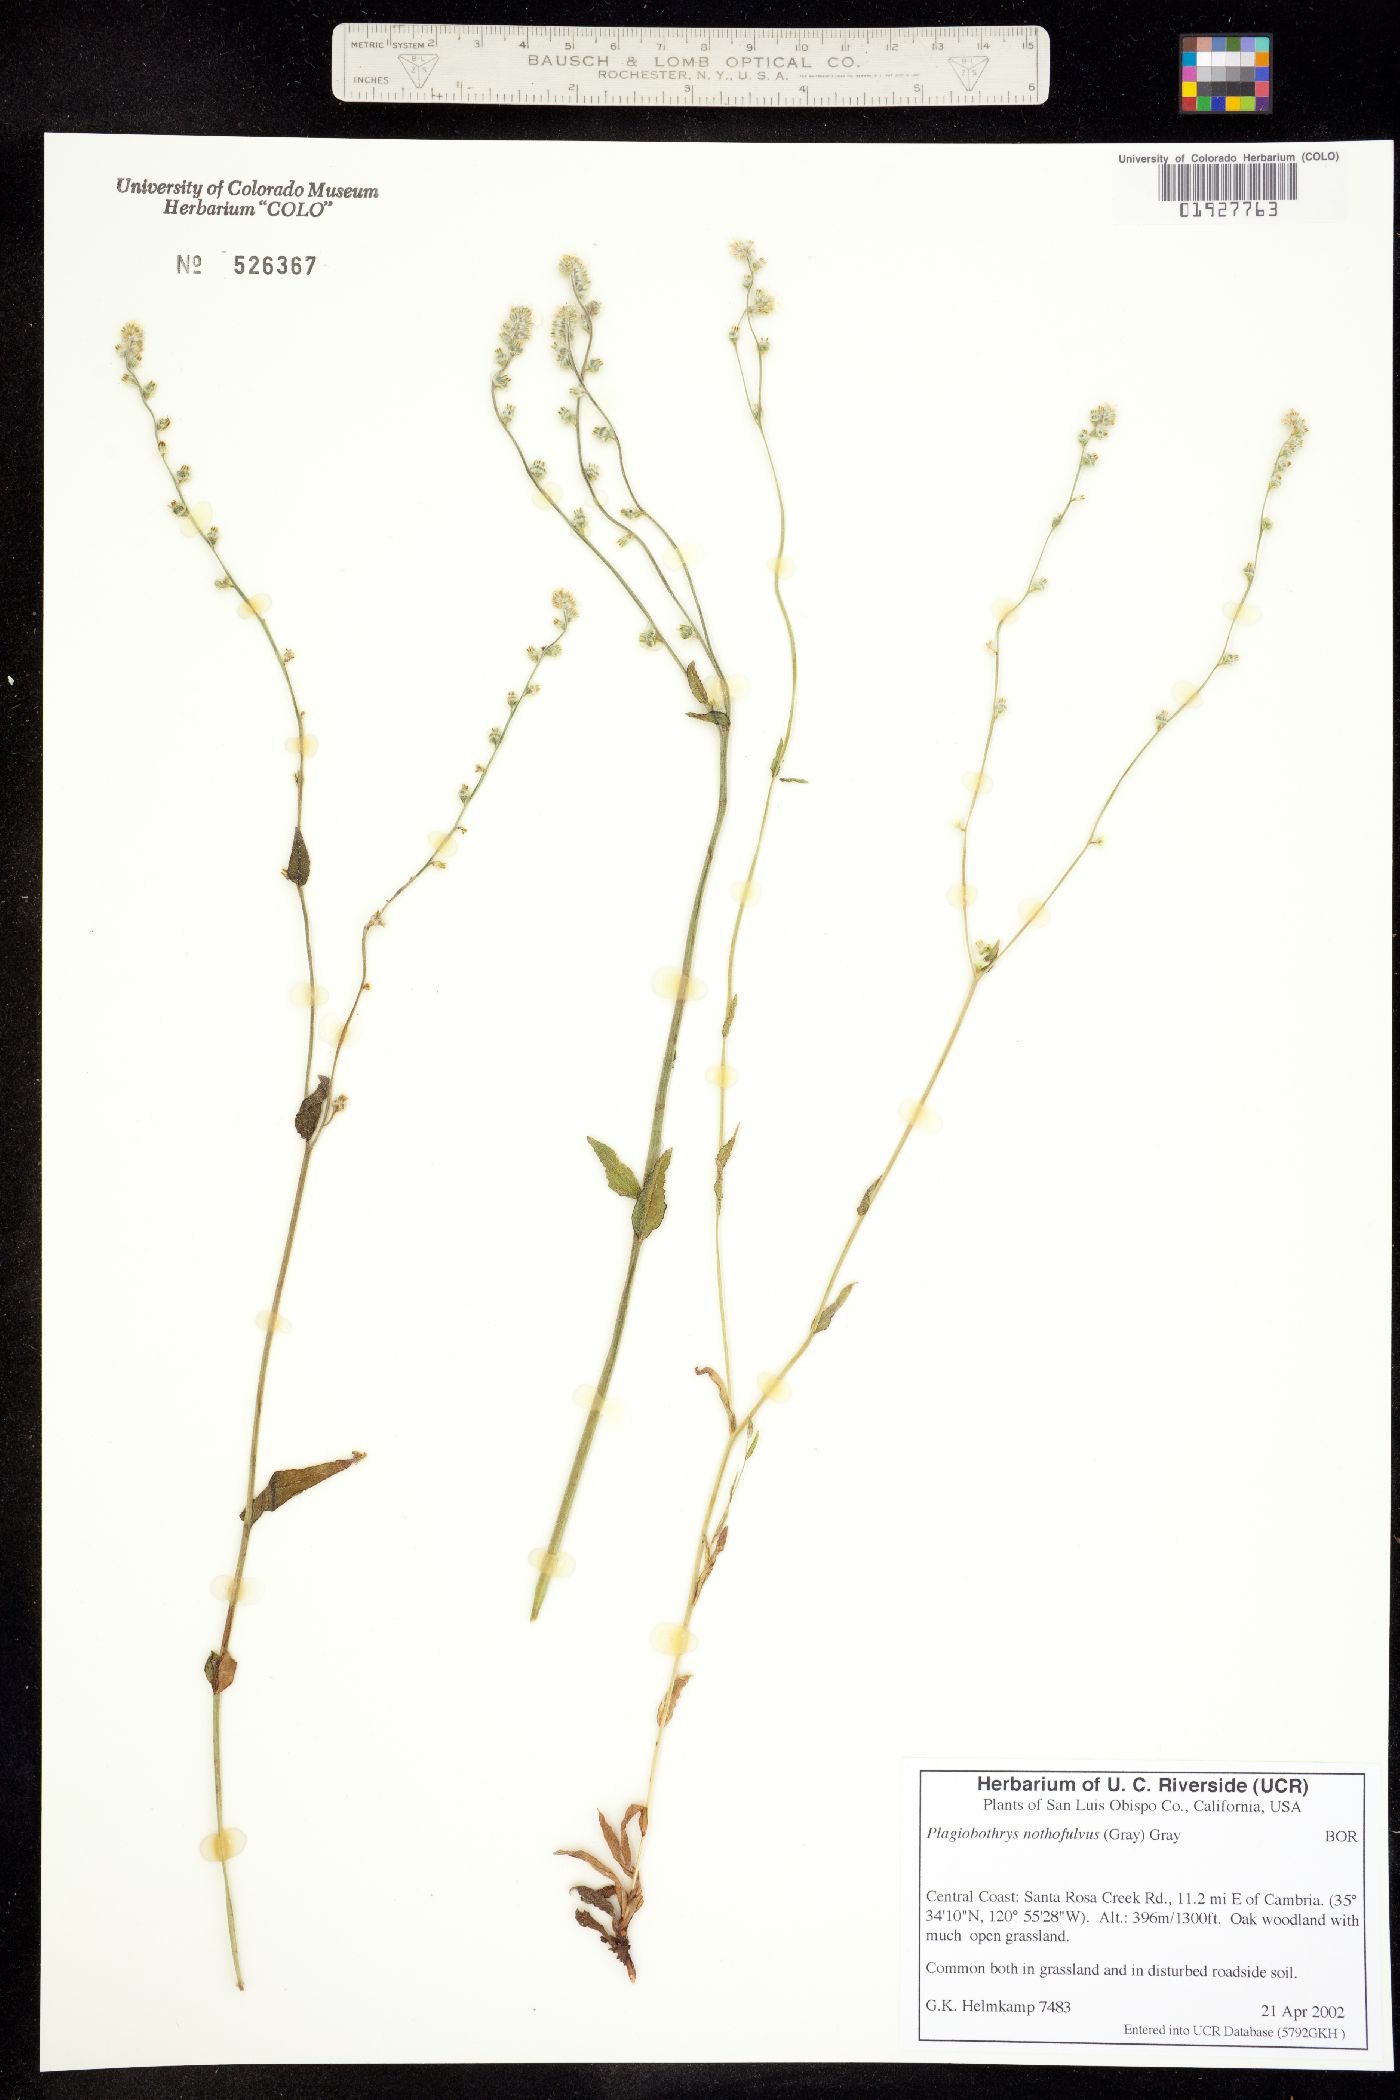 Plagiobothrys image